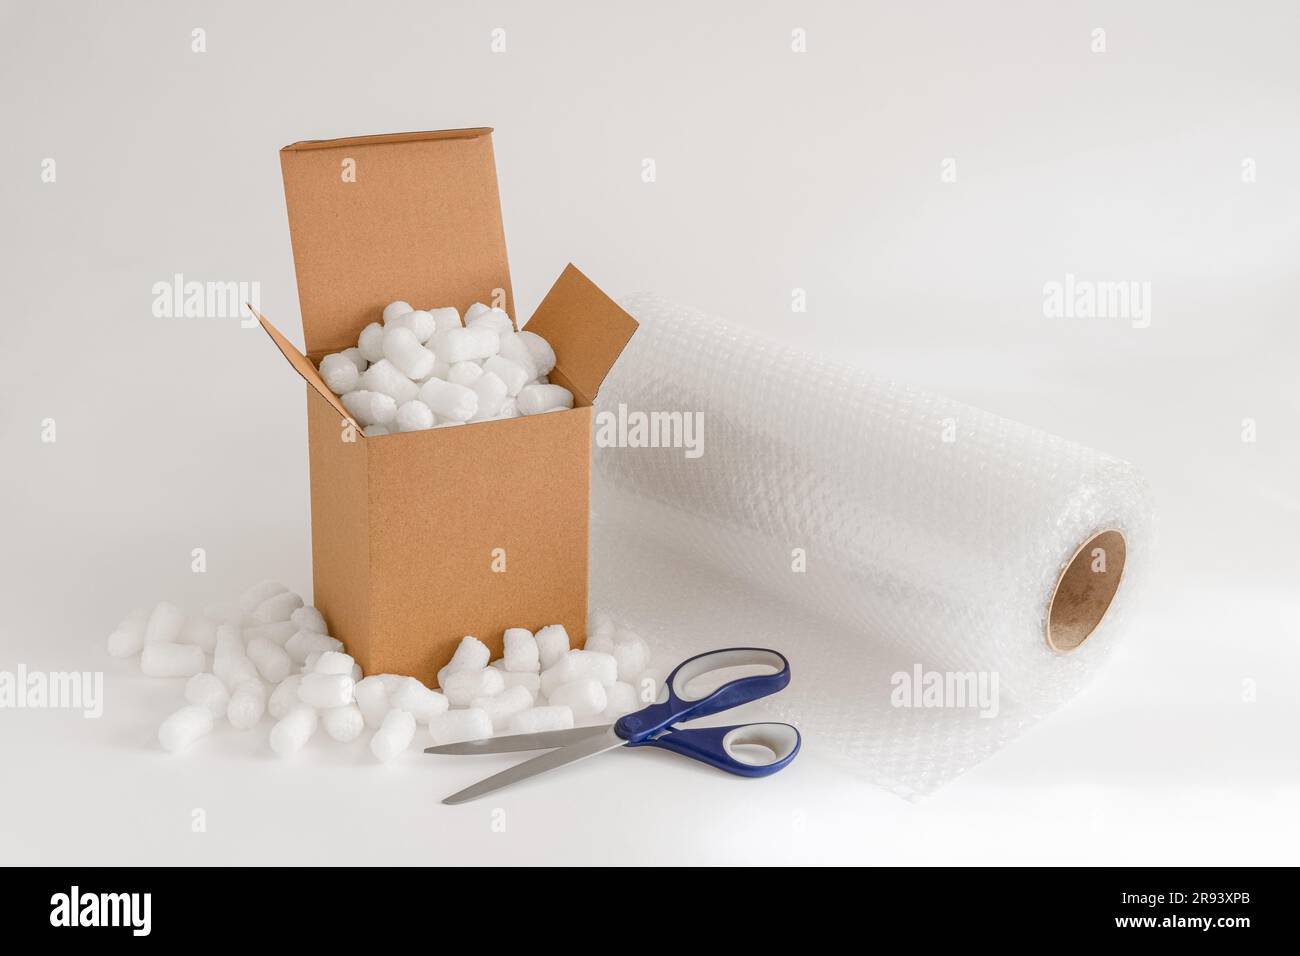 Caja de cartón aislada en el fondo blanco lleno de cacahuetes de embalaje más plástico de burbujas y tijeras Foto de stock